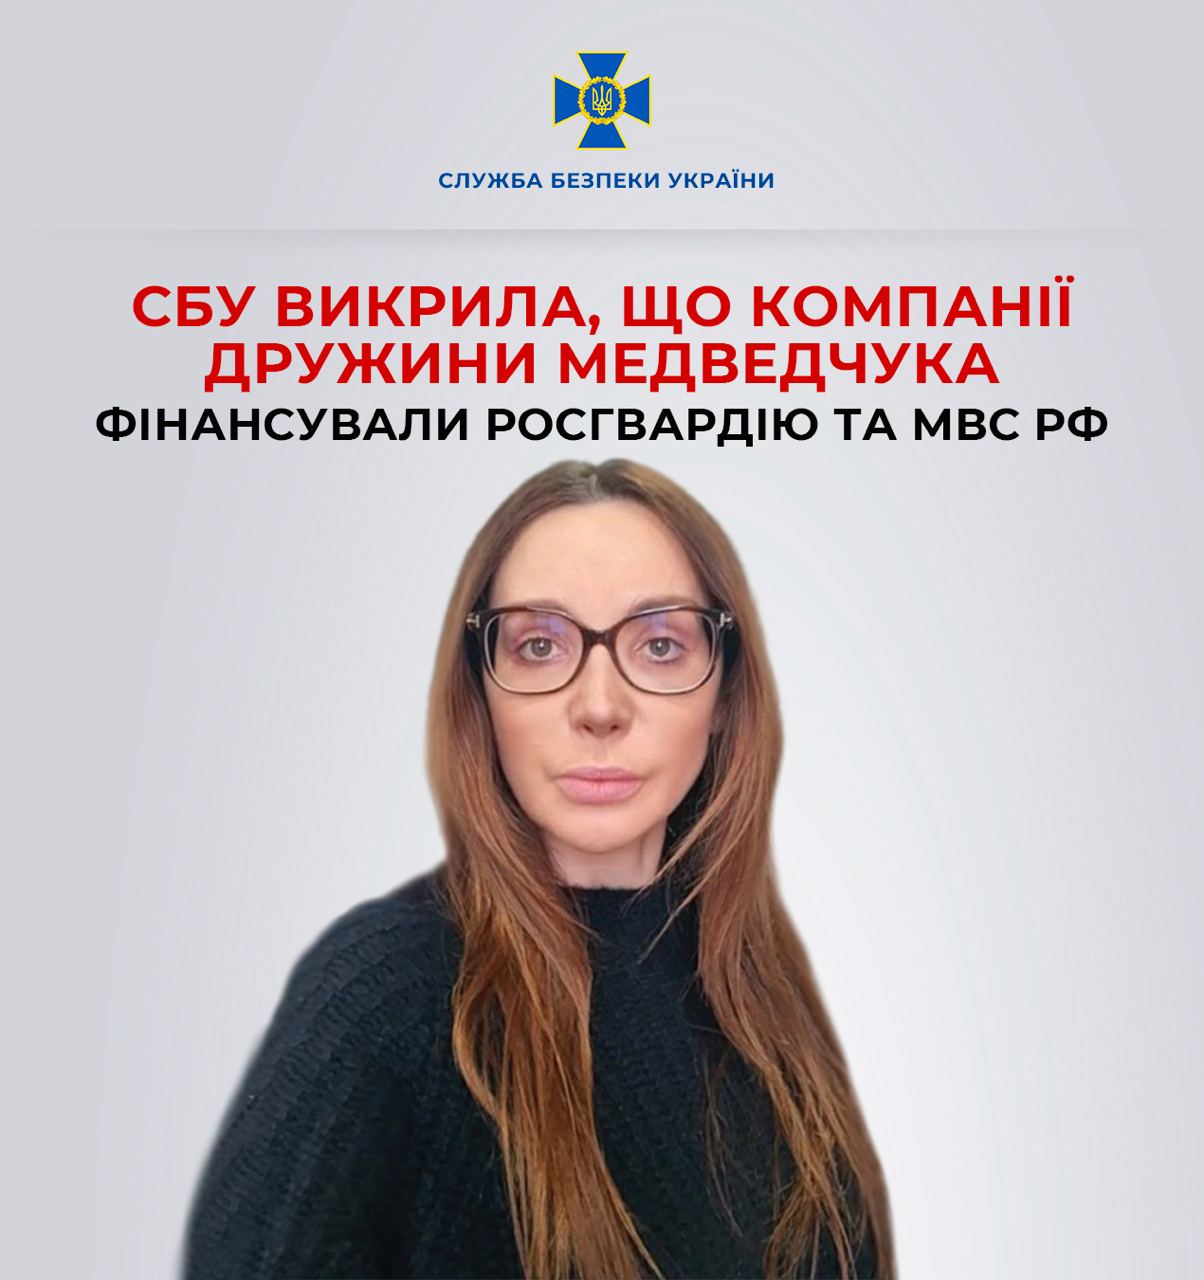 До 8 років ув’язнення: компанія Оксани Марченко фінансувала росгвардію та мвд рф